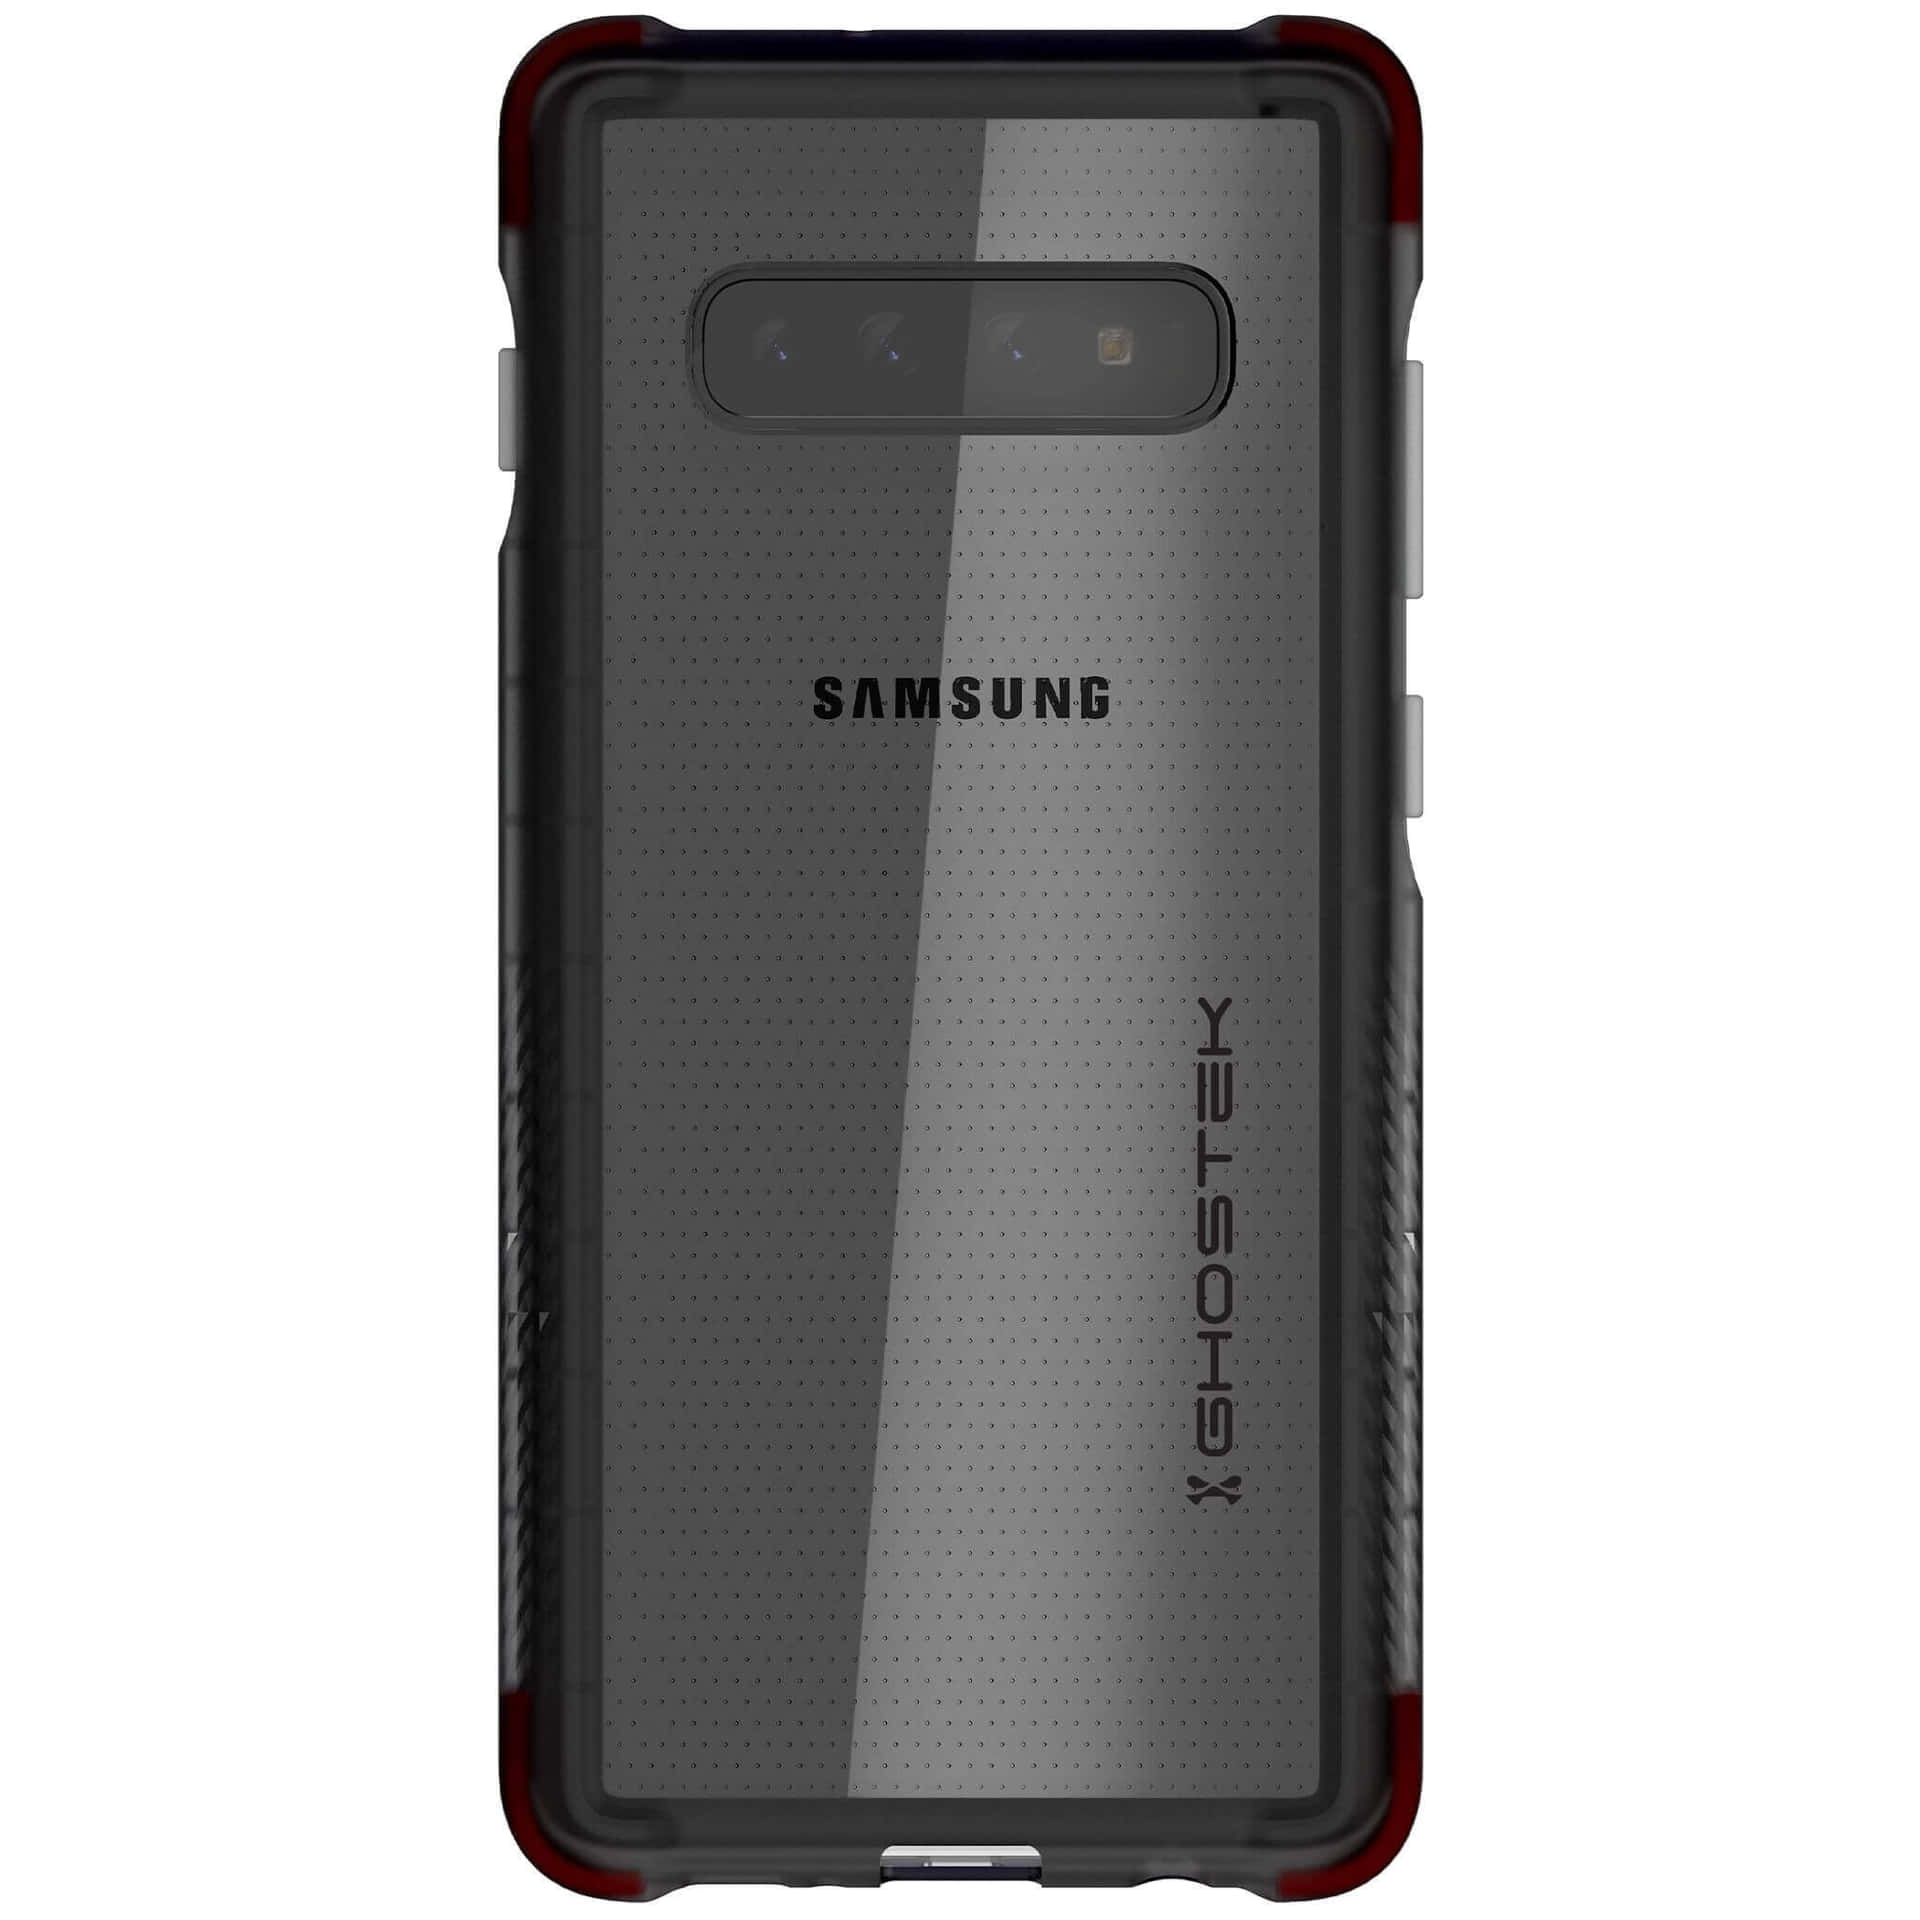 L'esperienzasuprema Dello Smartphone - Samsung Galaxy S10